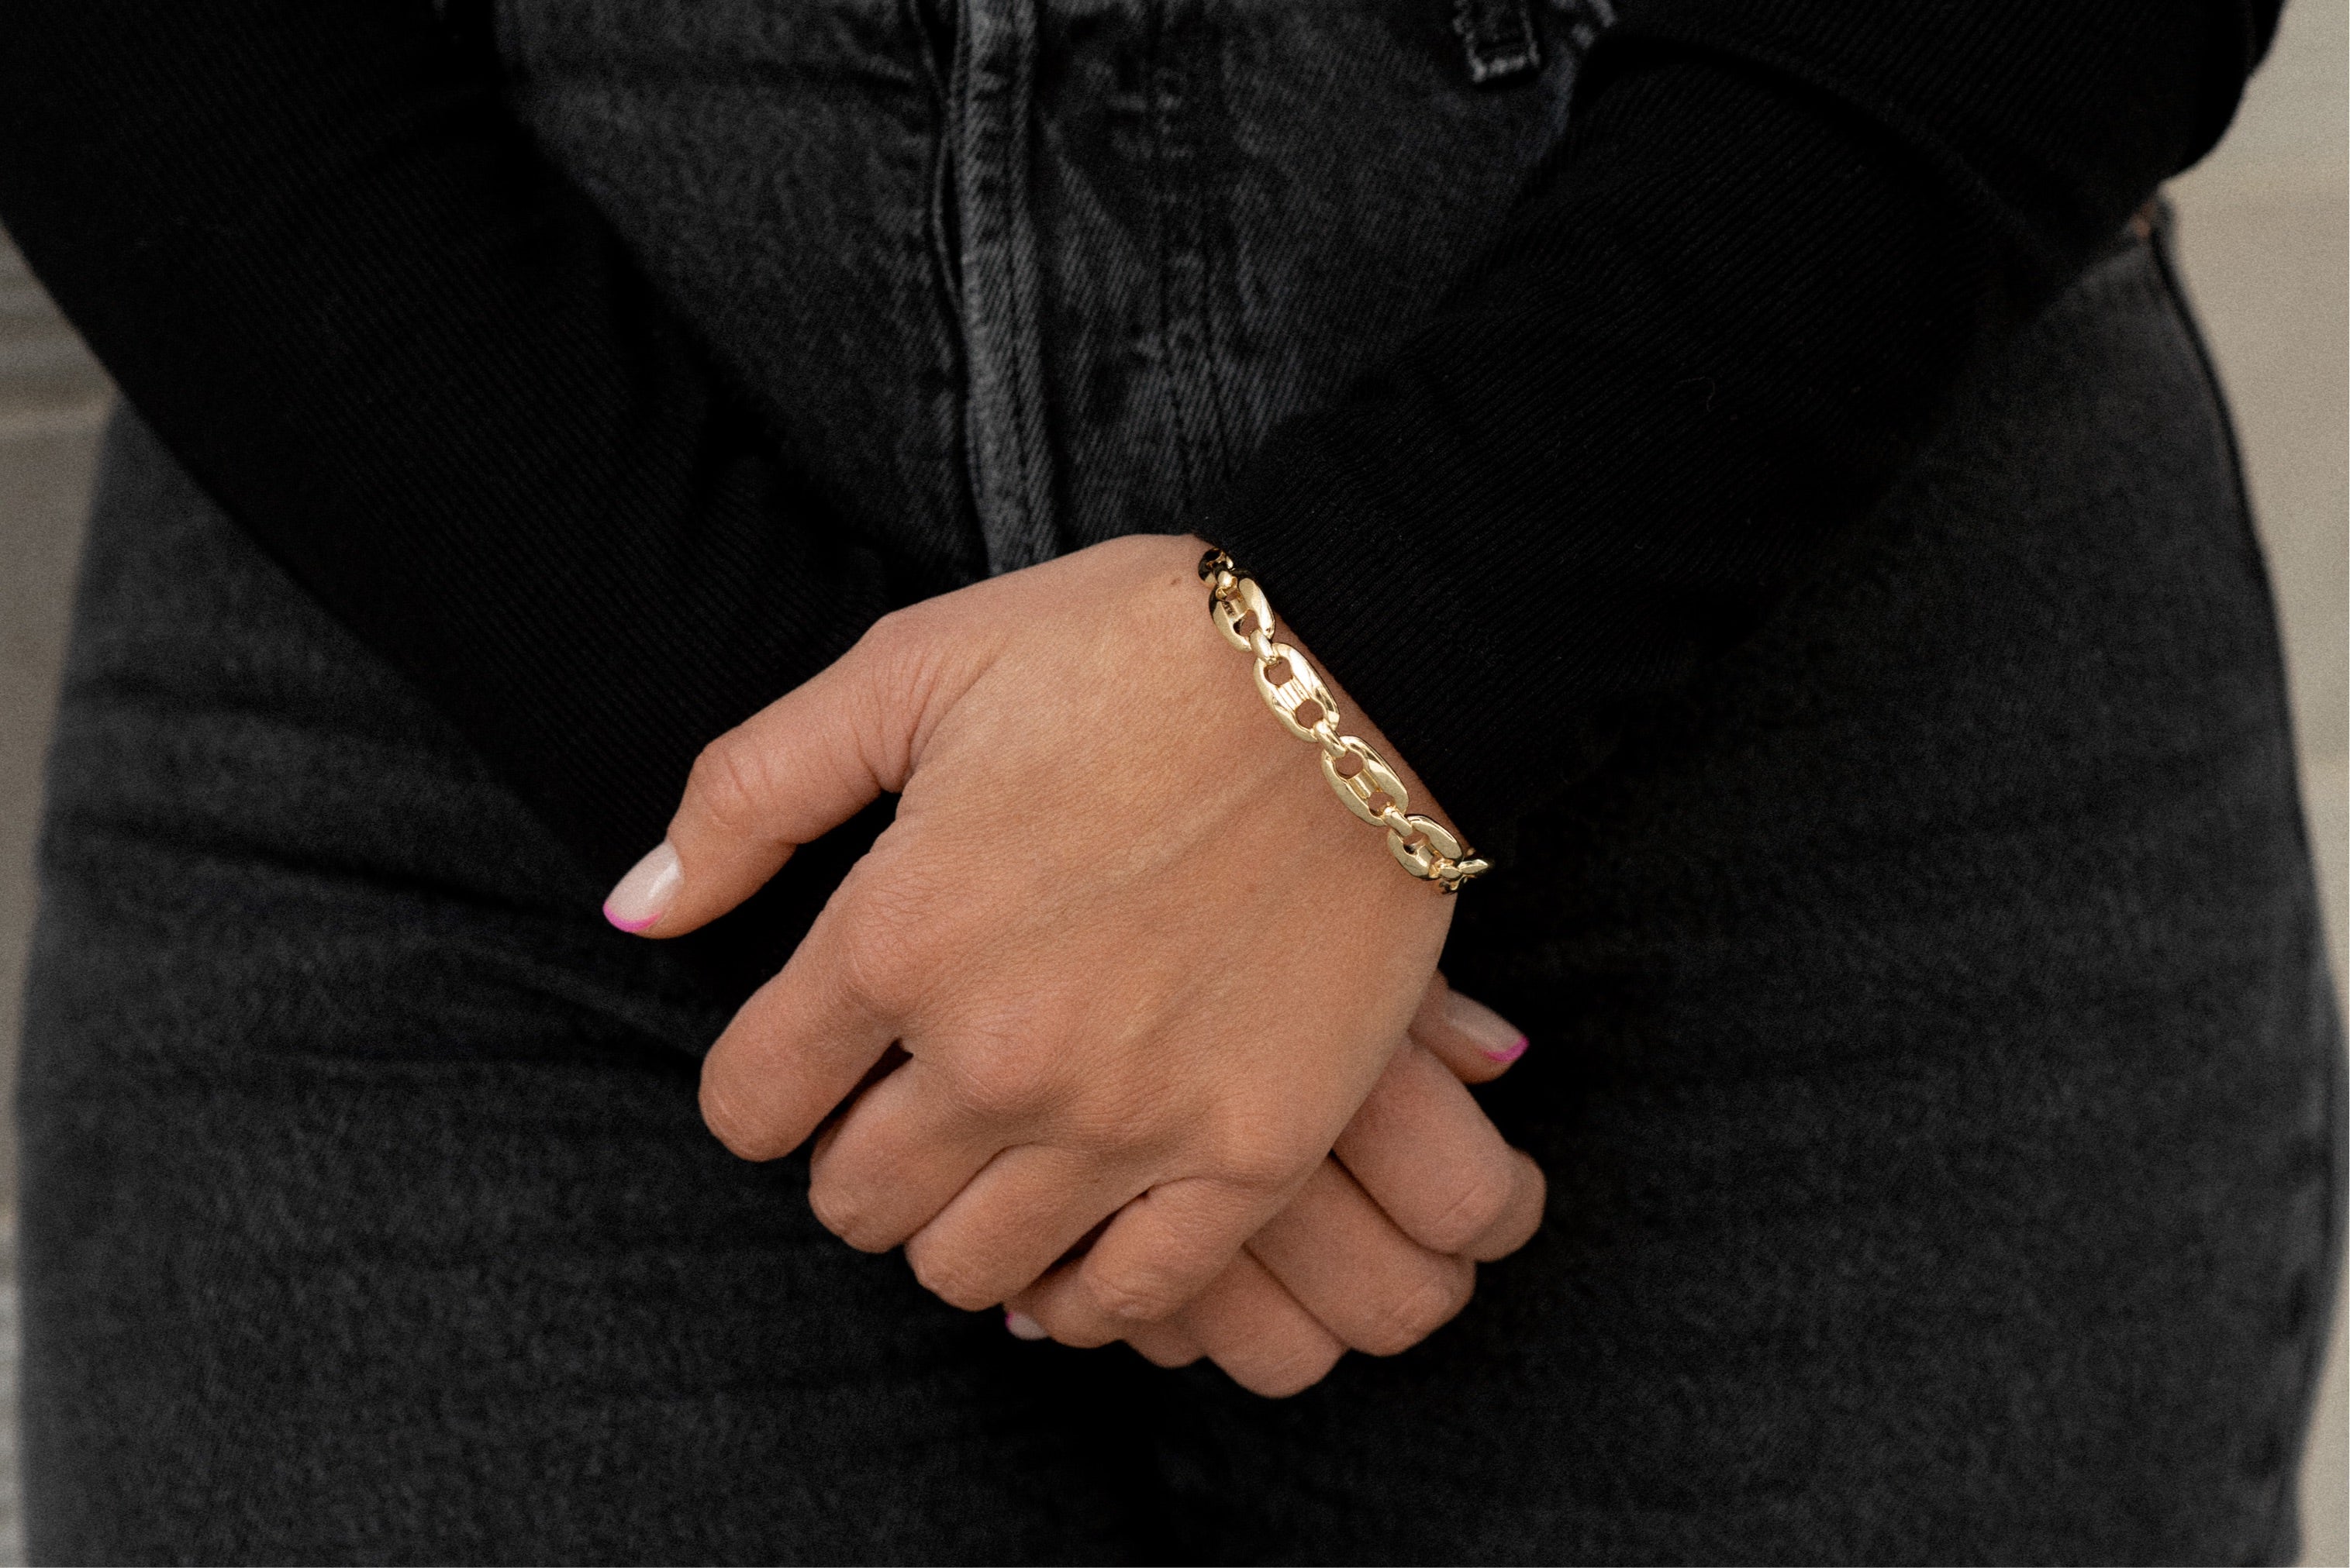 Band Together gold bracelet